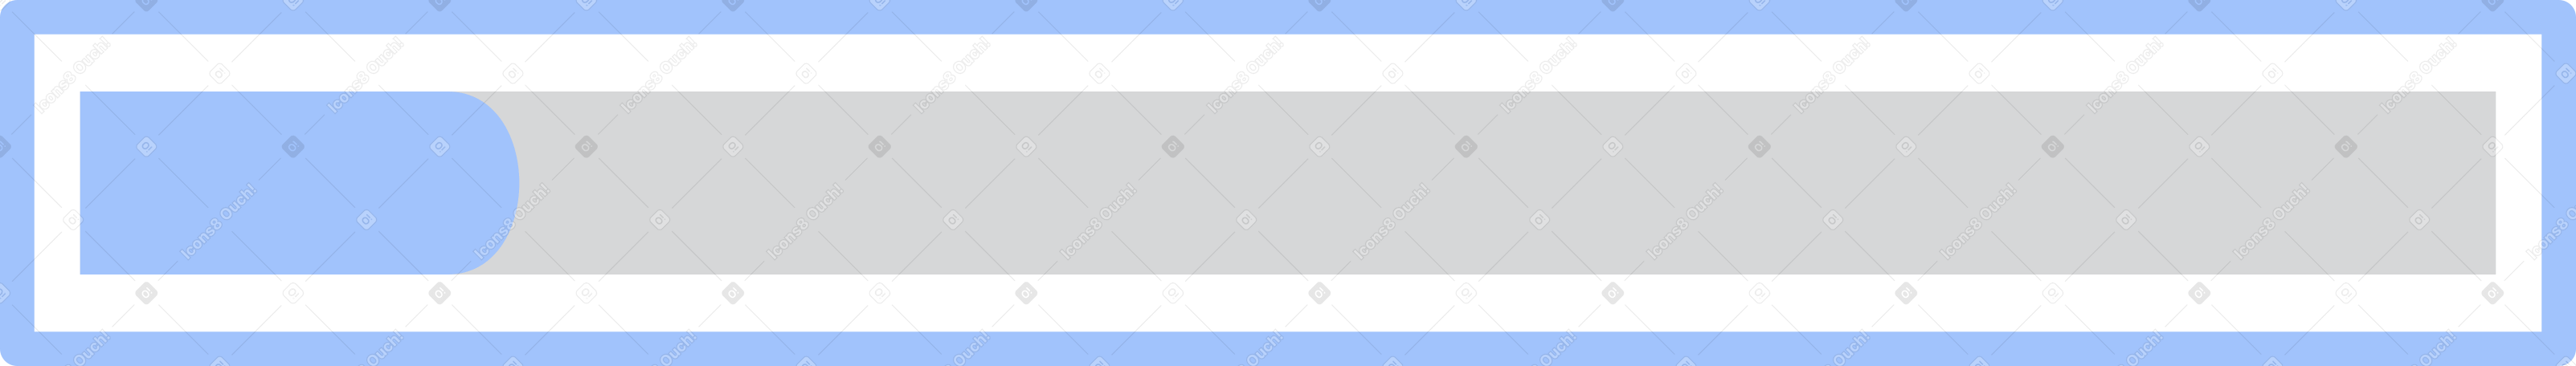 progress bar Illustration in PNG, SVG